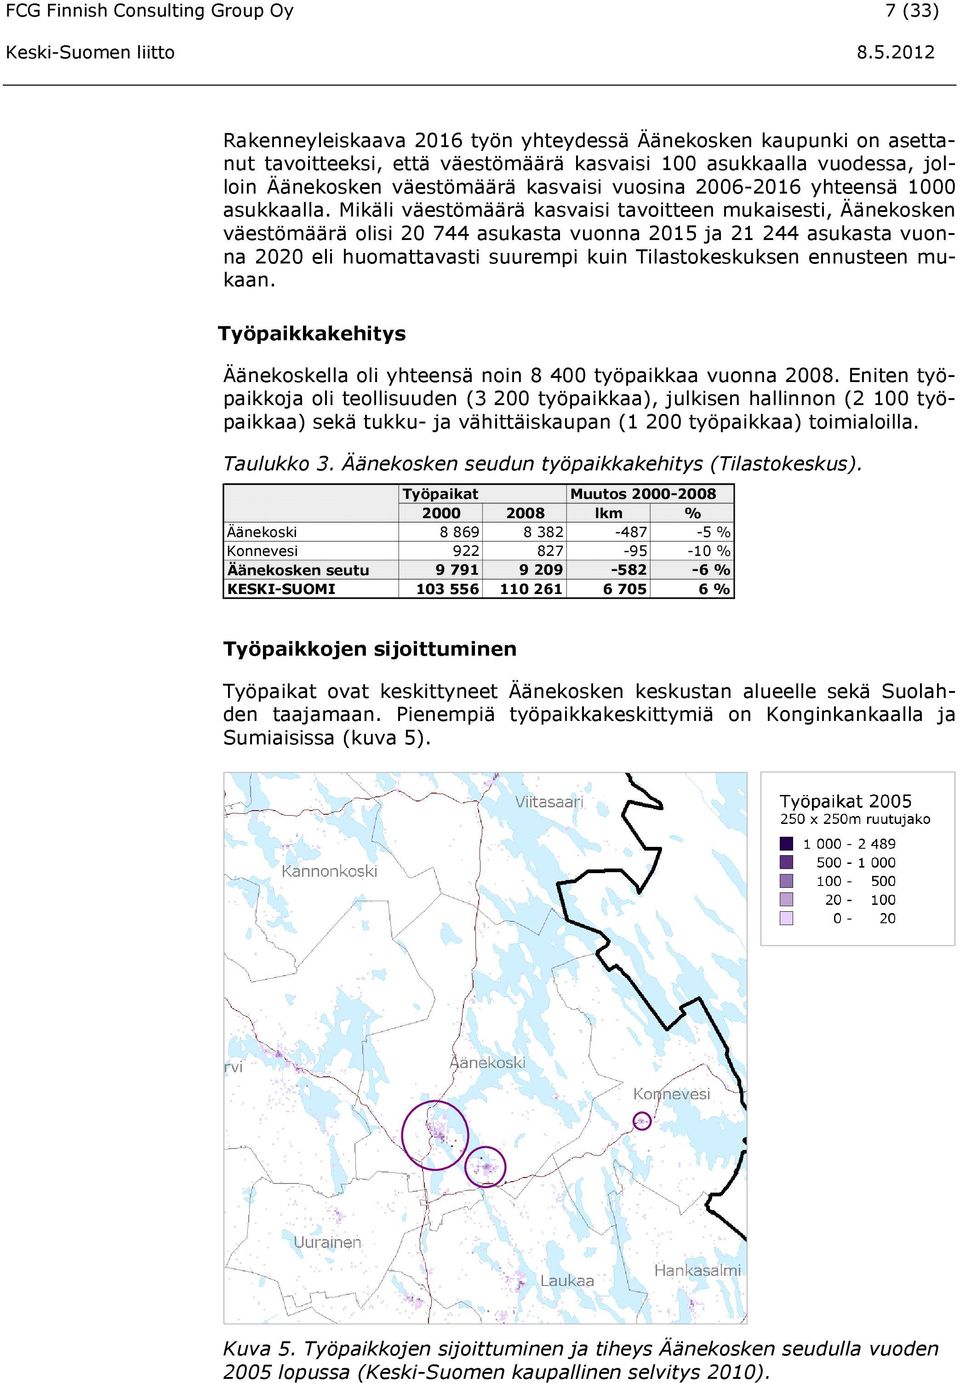 Mikäli väestömäärä kasvaisi tavoitteen mukaisesti, Äänekosken väestömäärä olisi 20 744 asukasta vuonna 2015 ja 21 244 asukasta vuonna 2020 eli huomattavasti suurempi kuin Tilastokeskuksen ennusteen